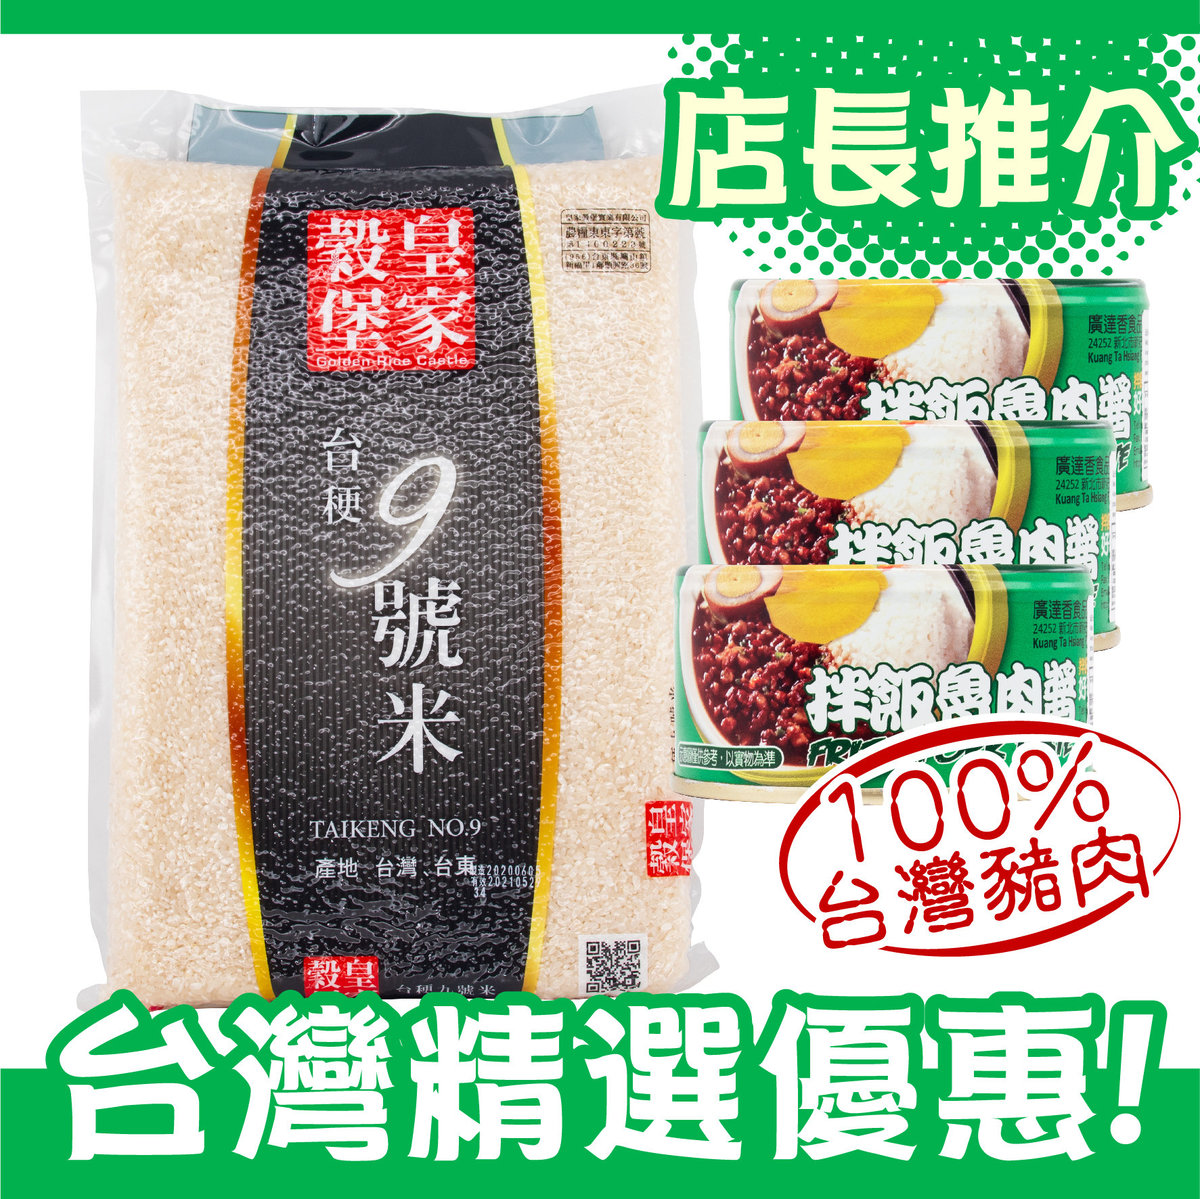 [台灣精選優惠] 台灣台梗九號米(2.5kg) + 台灣拌飯魯肉醬(120g) x 3罐